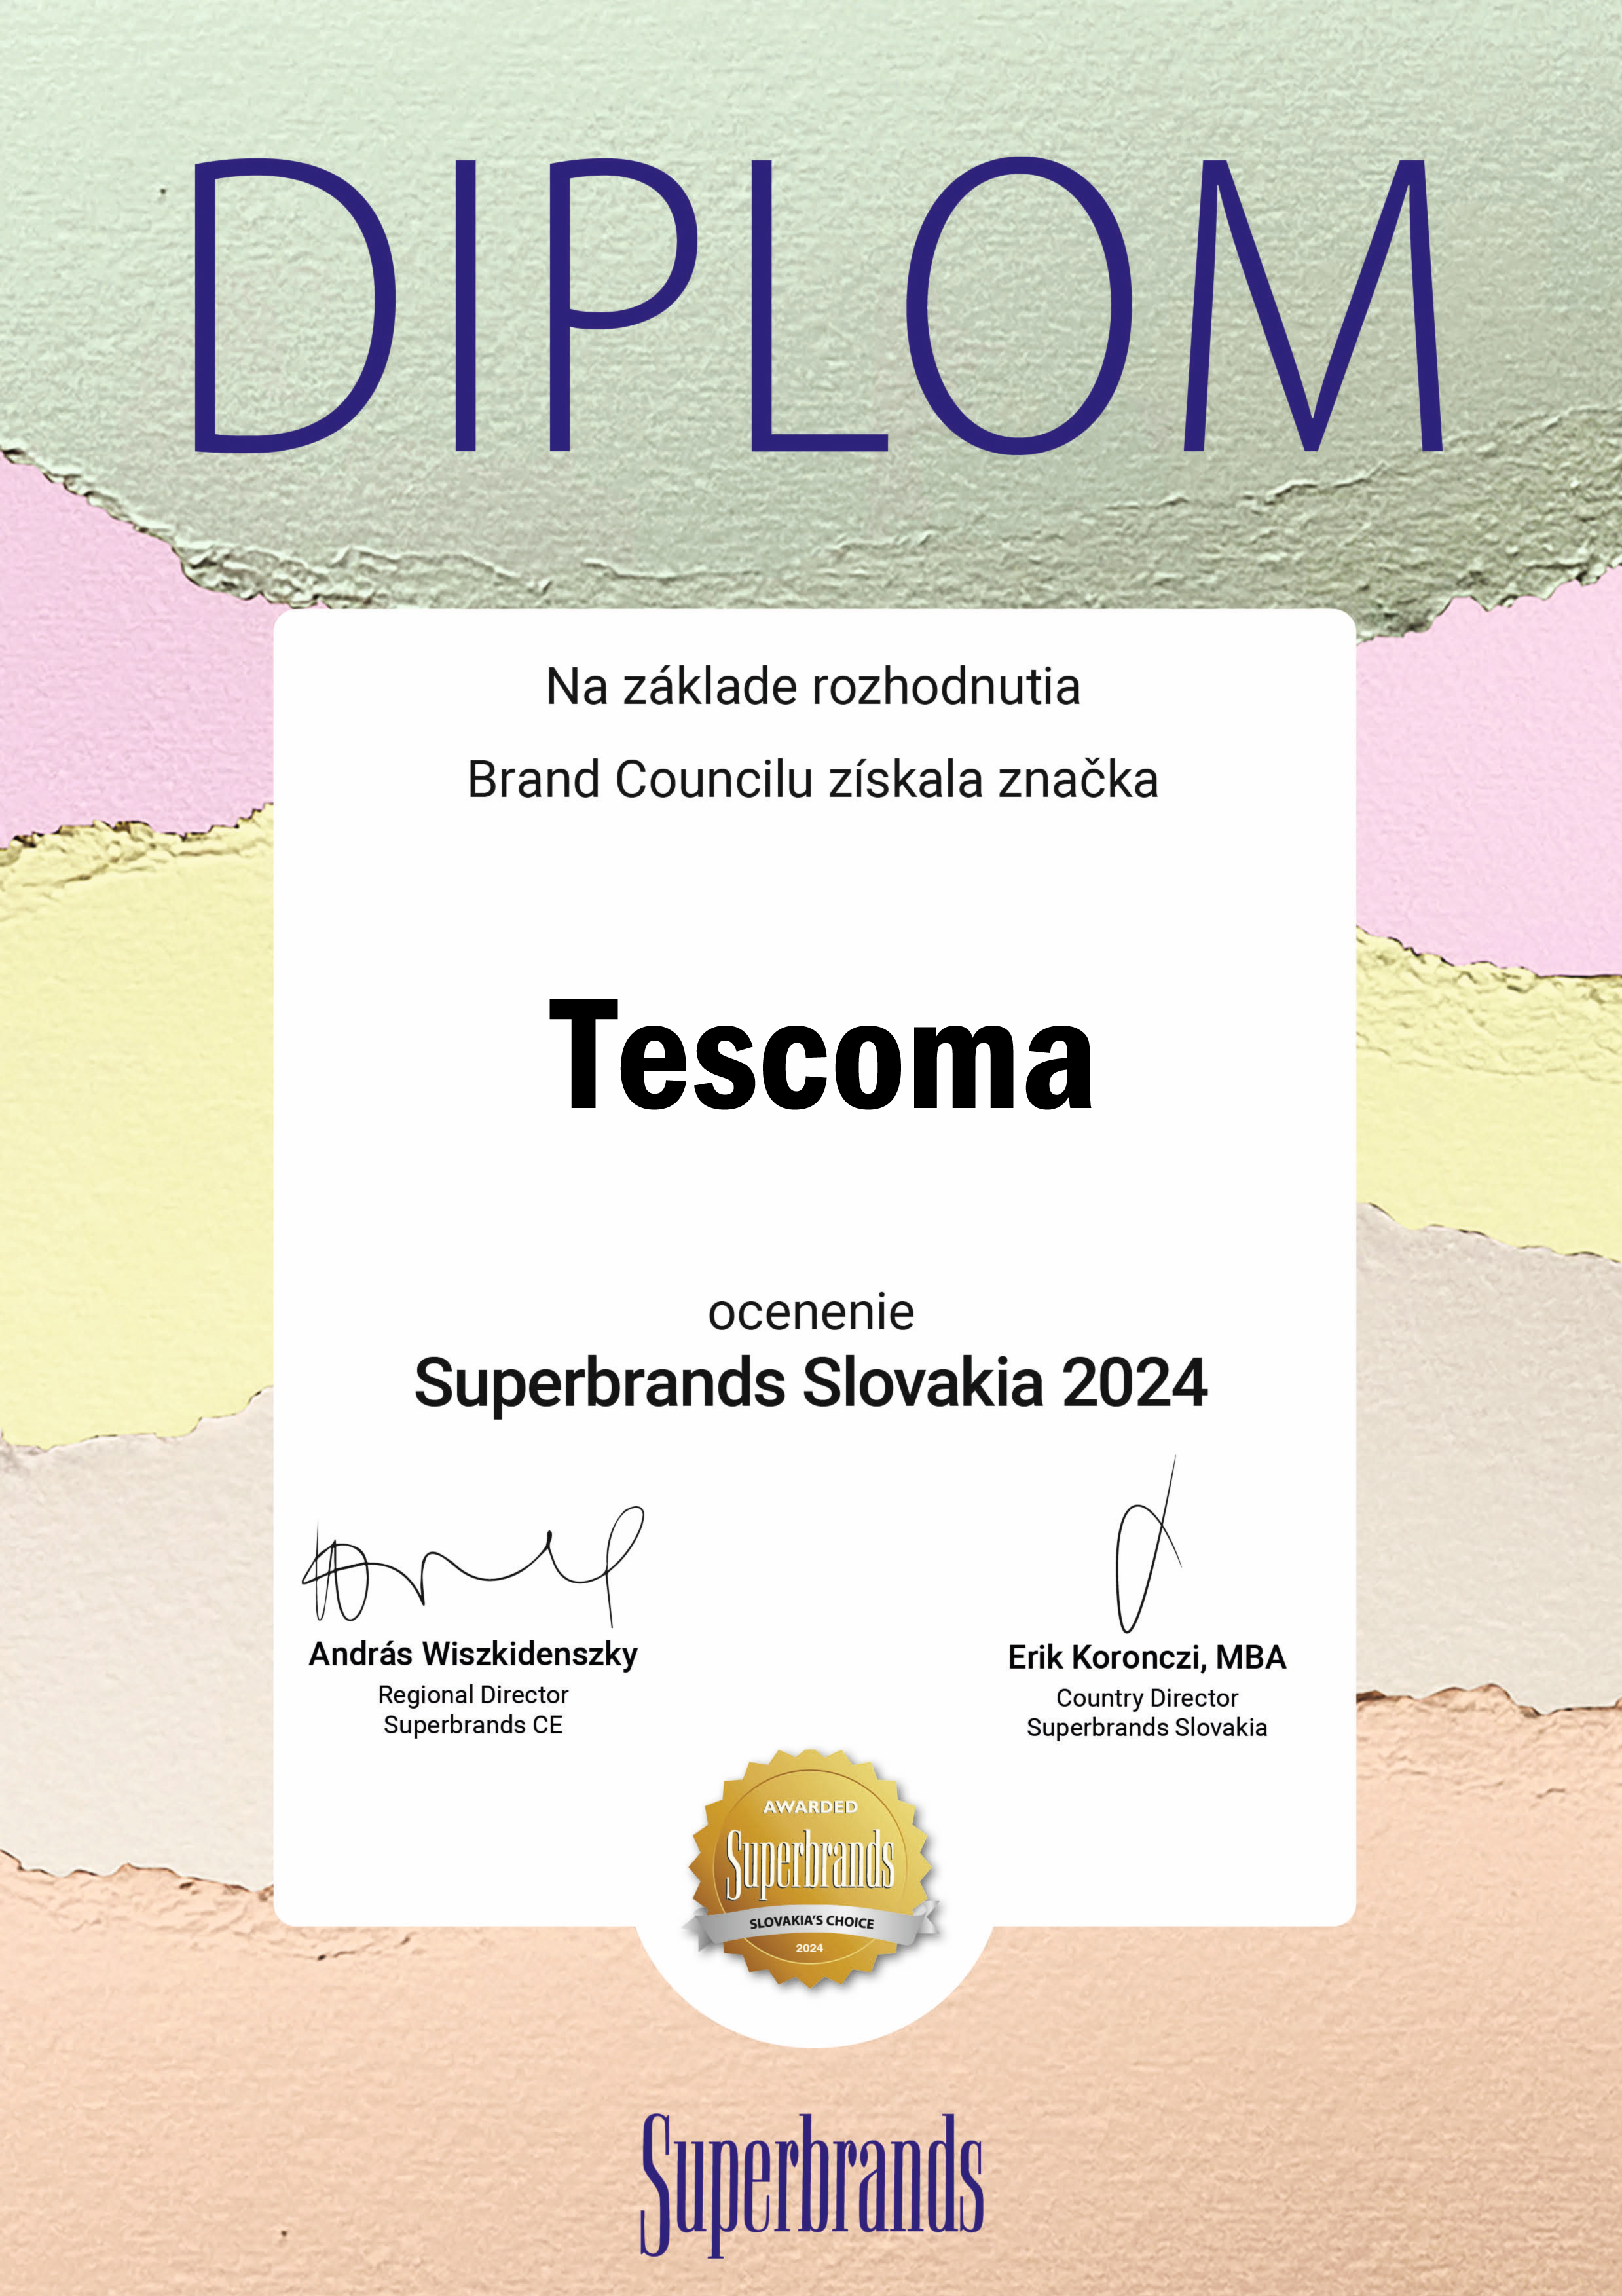 Diplom Superbrands 2024